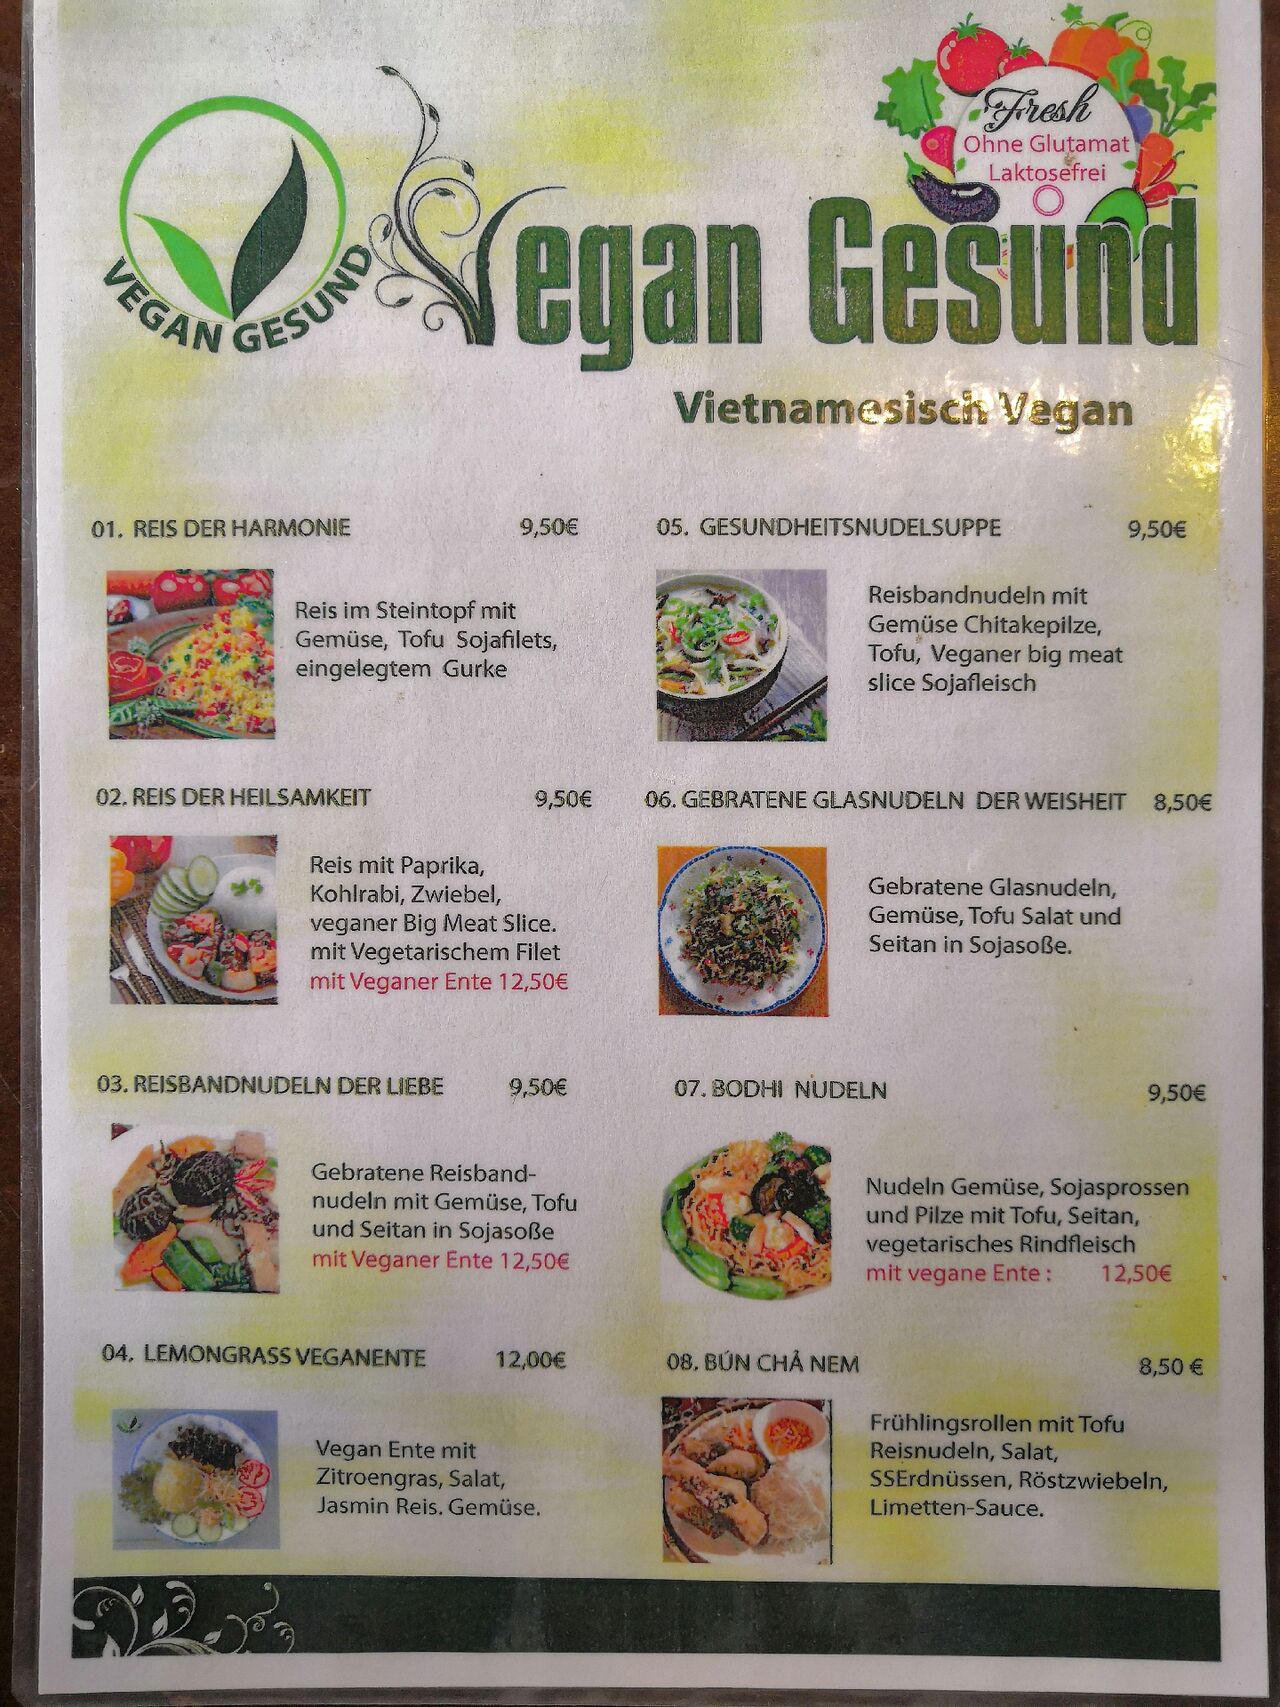 A photo of Vegan Gesund